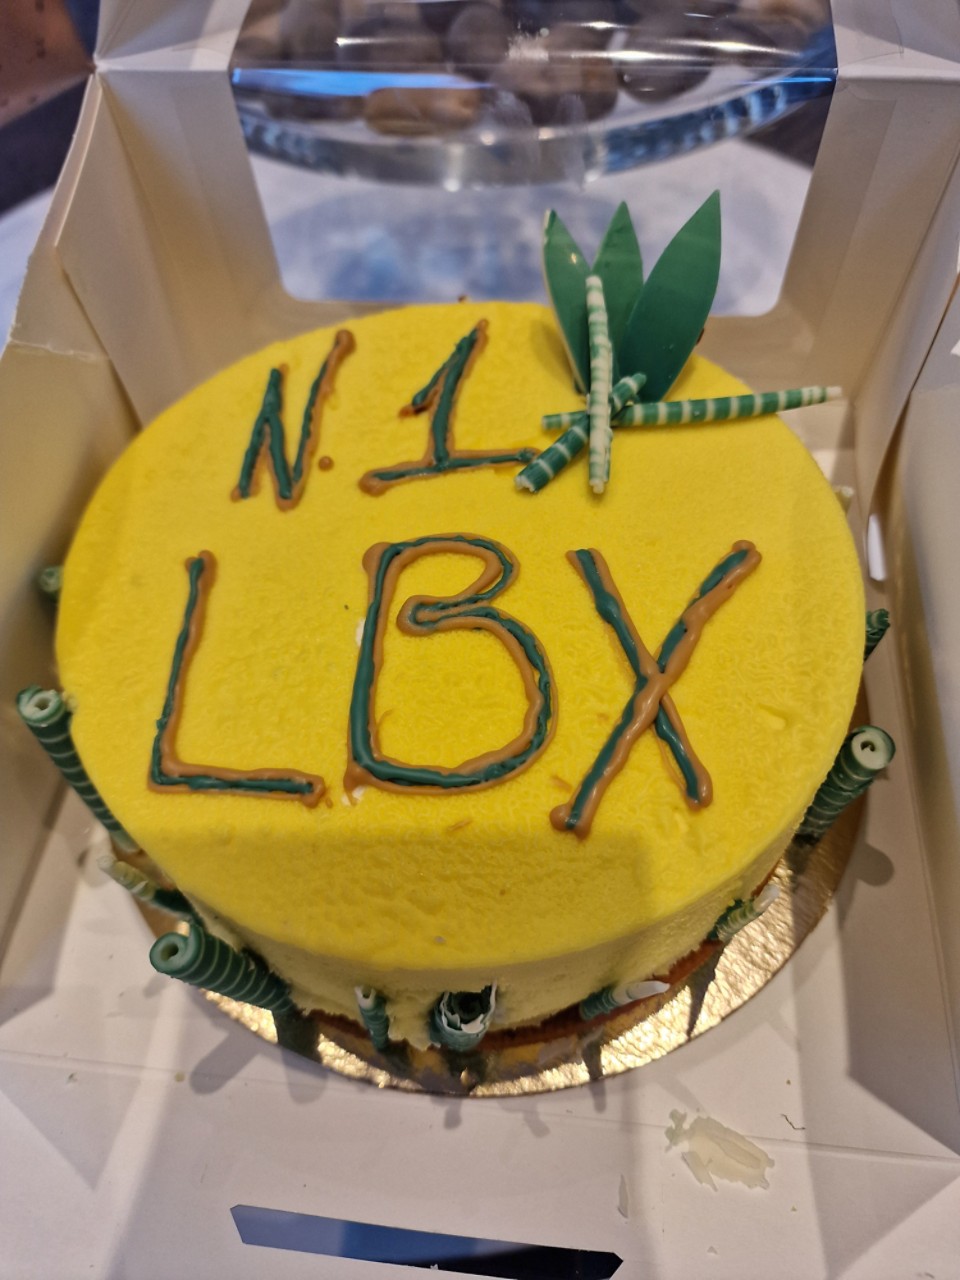 LBX-kakku